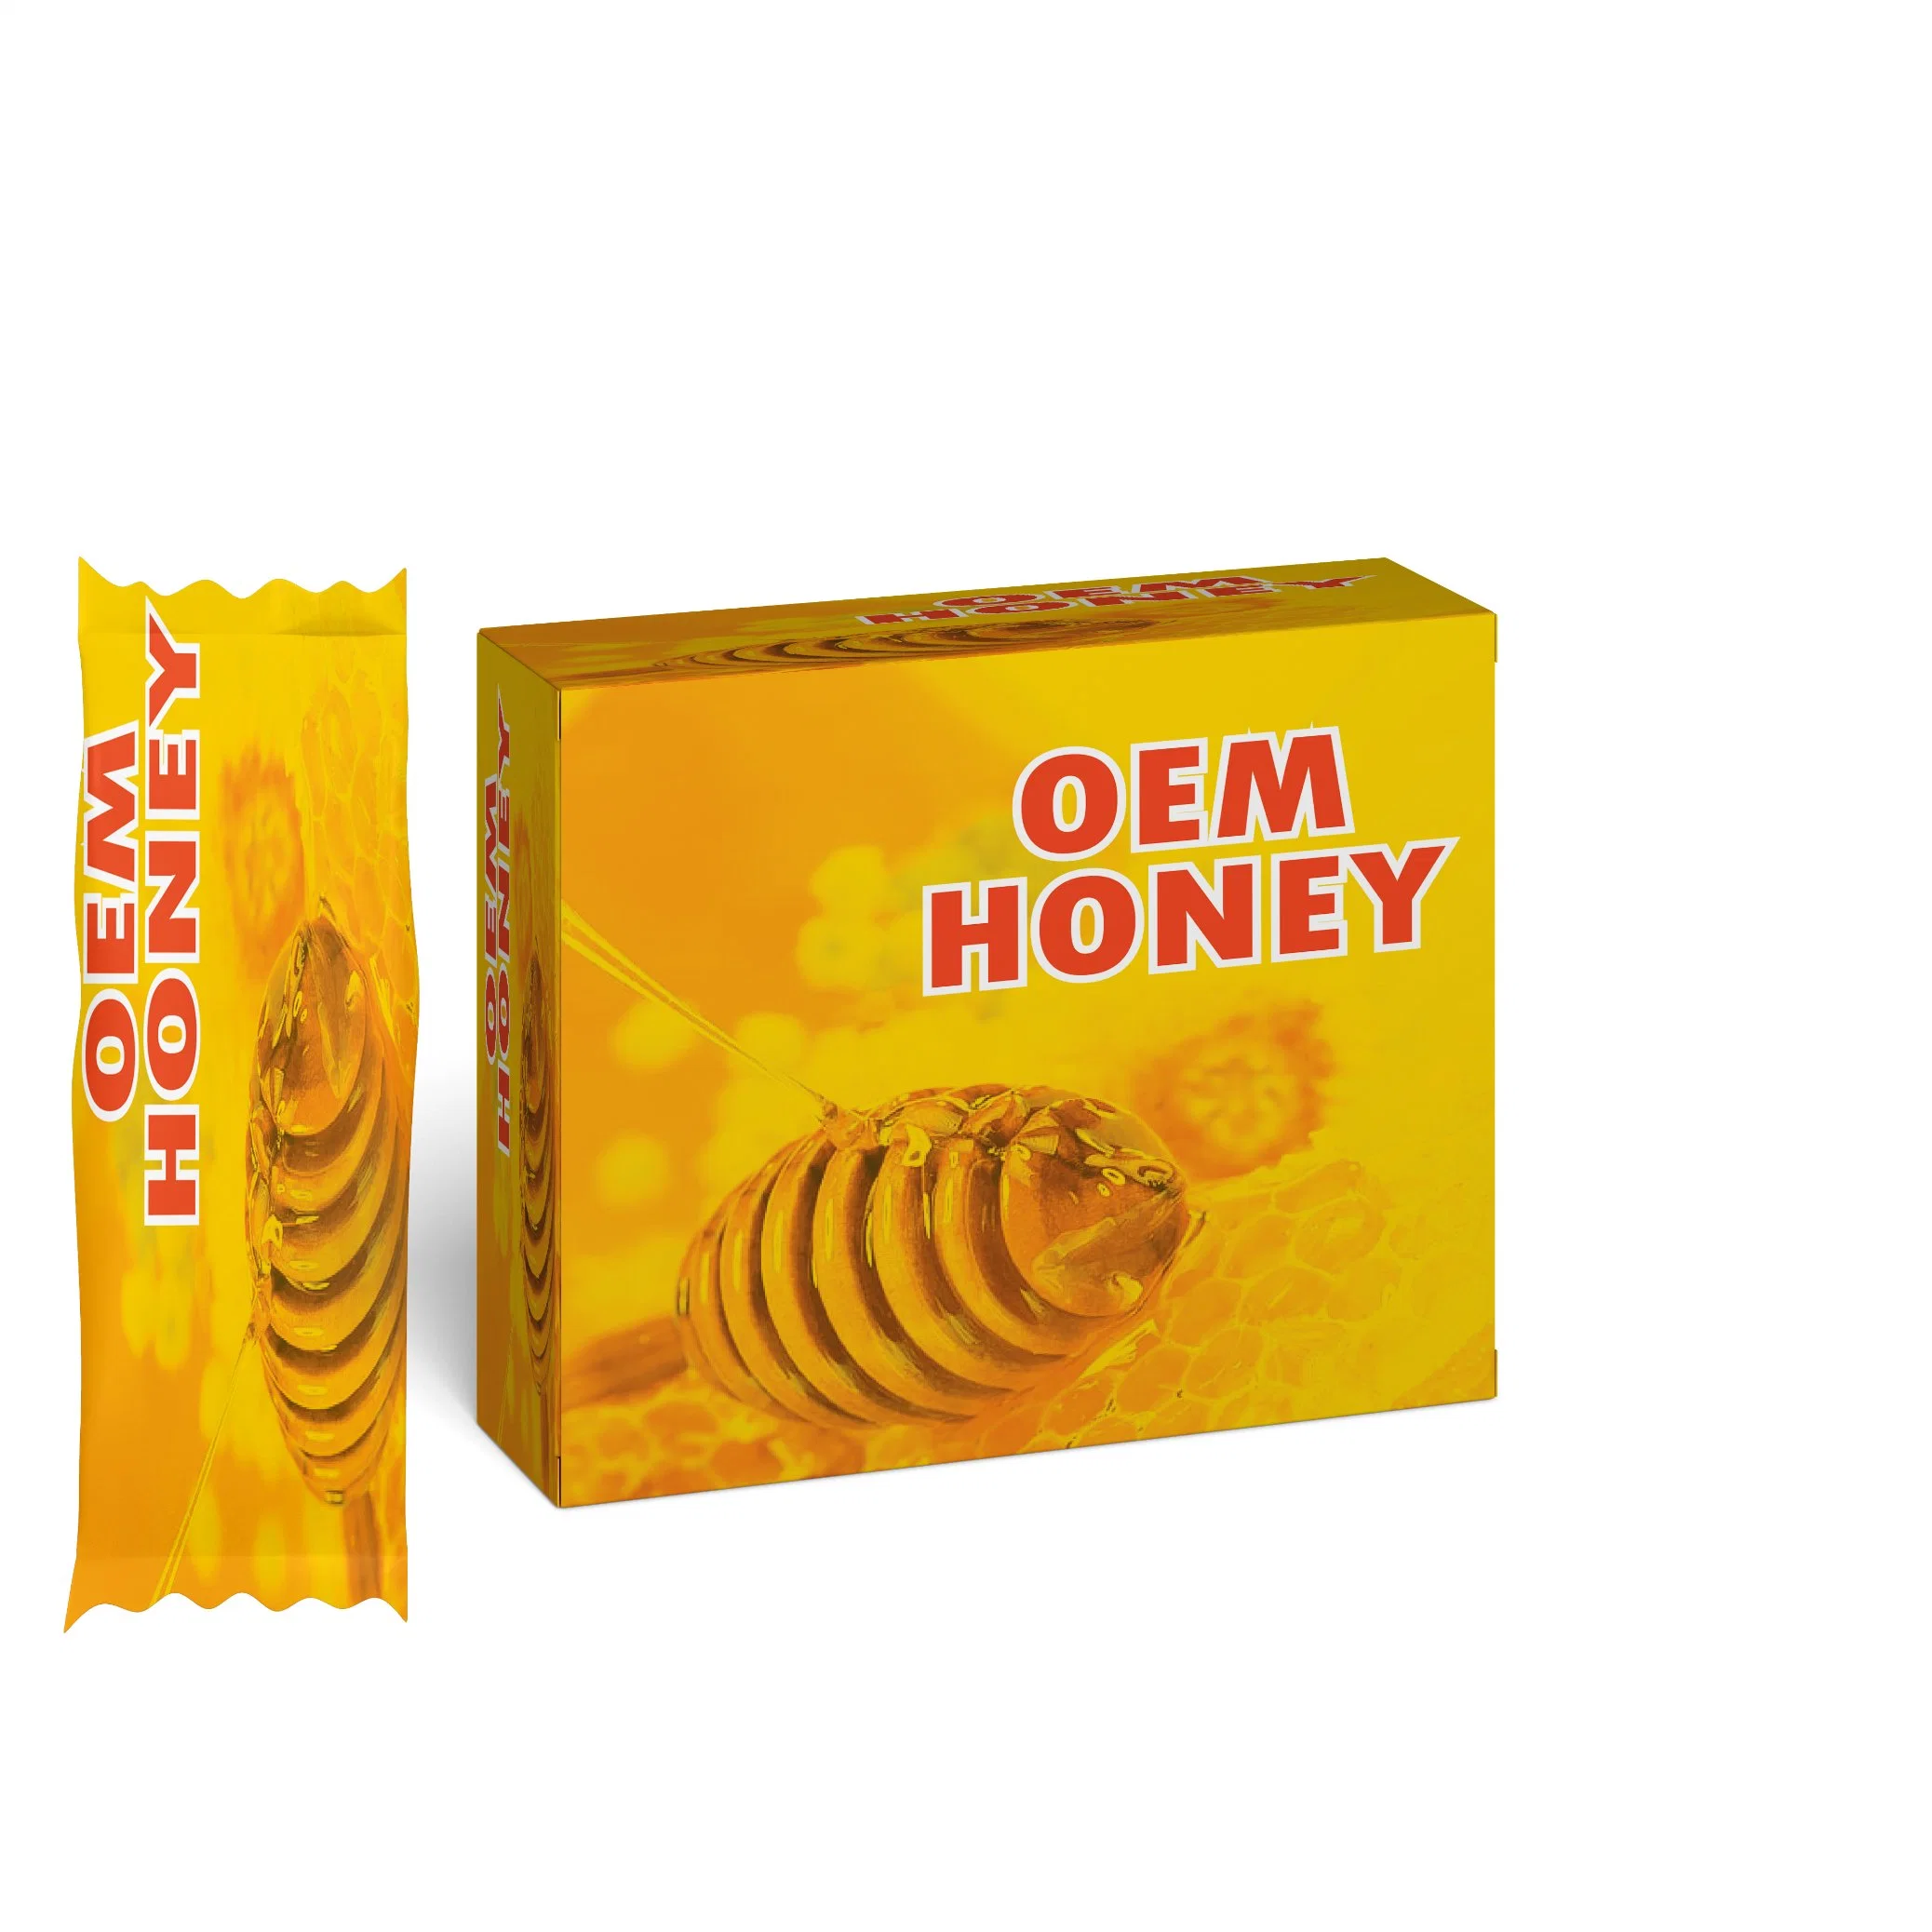 Mulheres satisfazer Hot Venler saudável orgânico puro 20g mel 100% Produto da Malásia